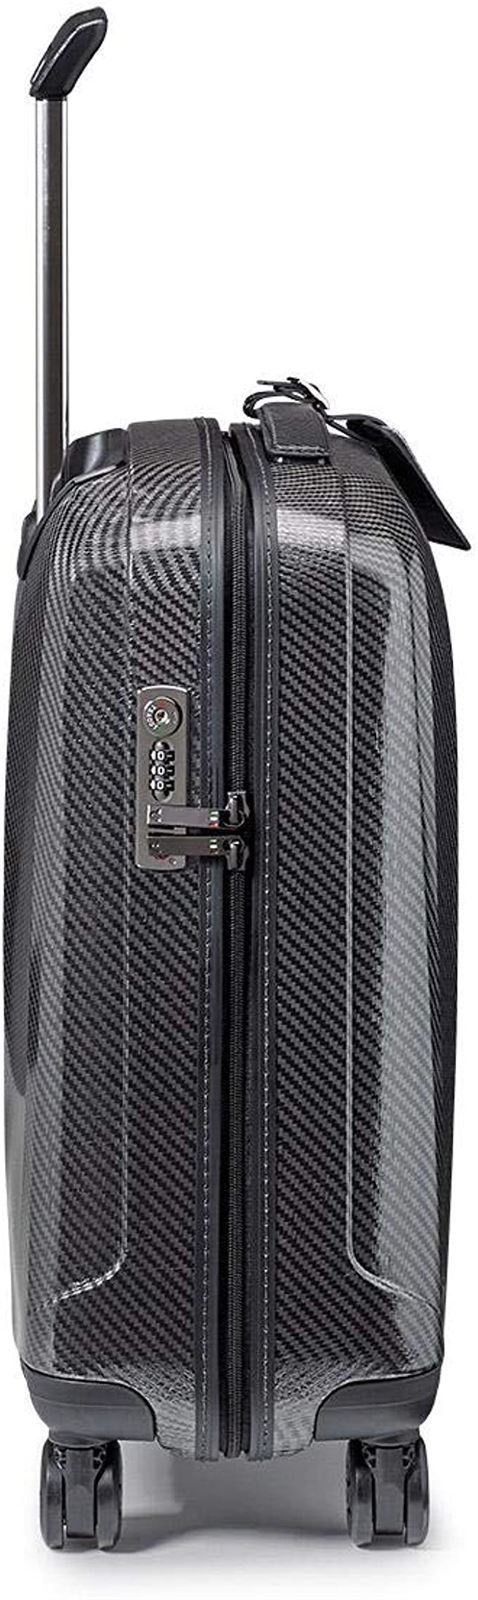 Roncato maleta de cabina We Are Glam color Antracita material EC Matrix muy Resistente 55x40x20 capacidad 40 litros 10 años de Garantia - Imagen 3